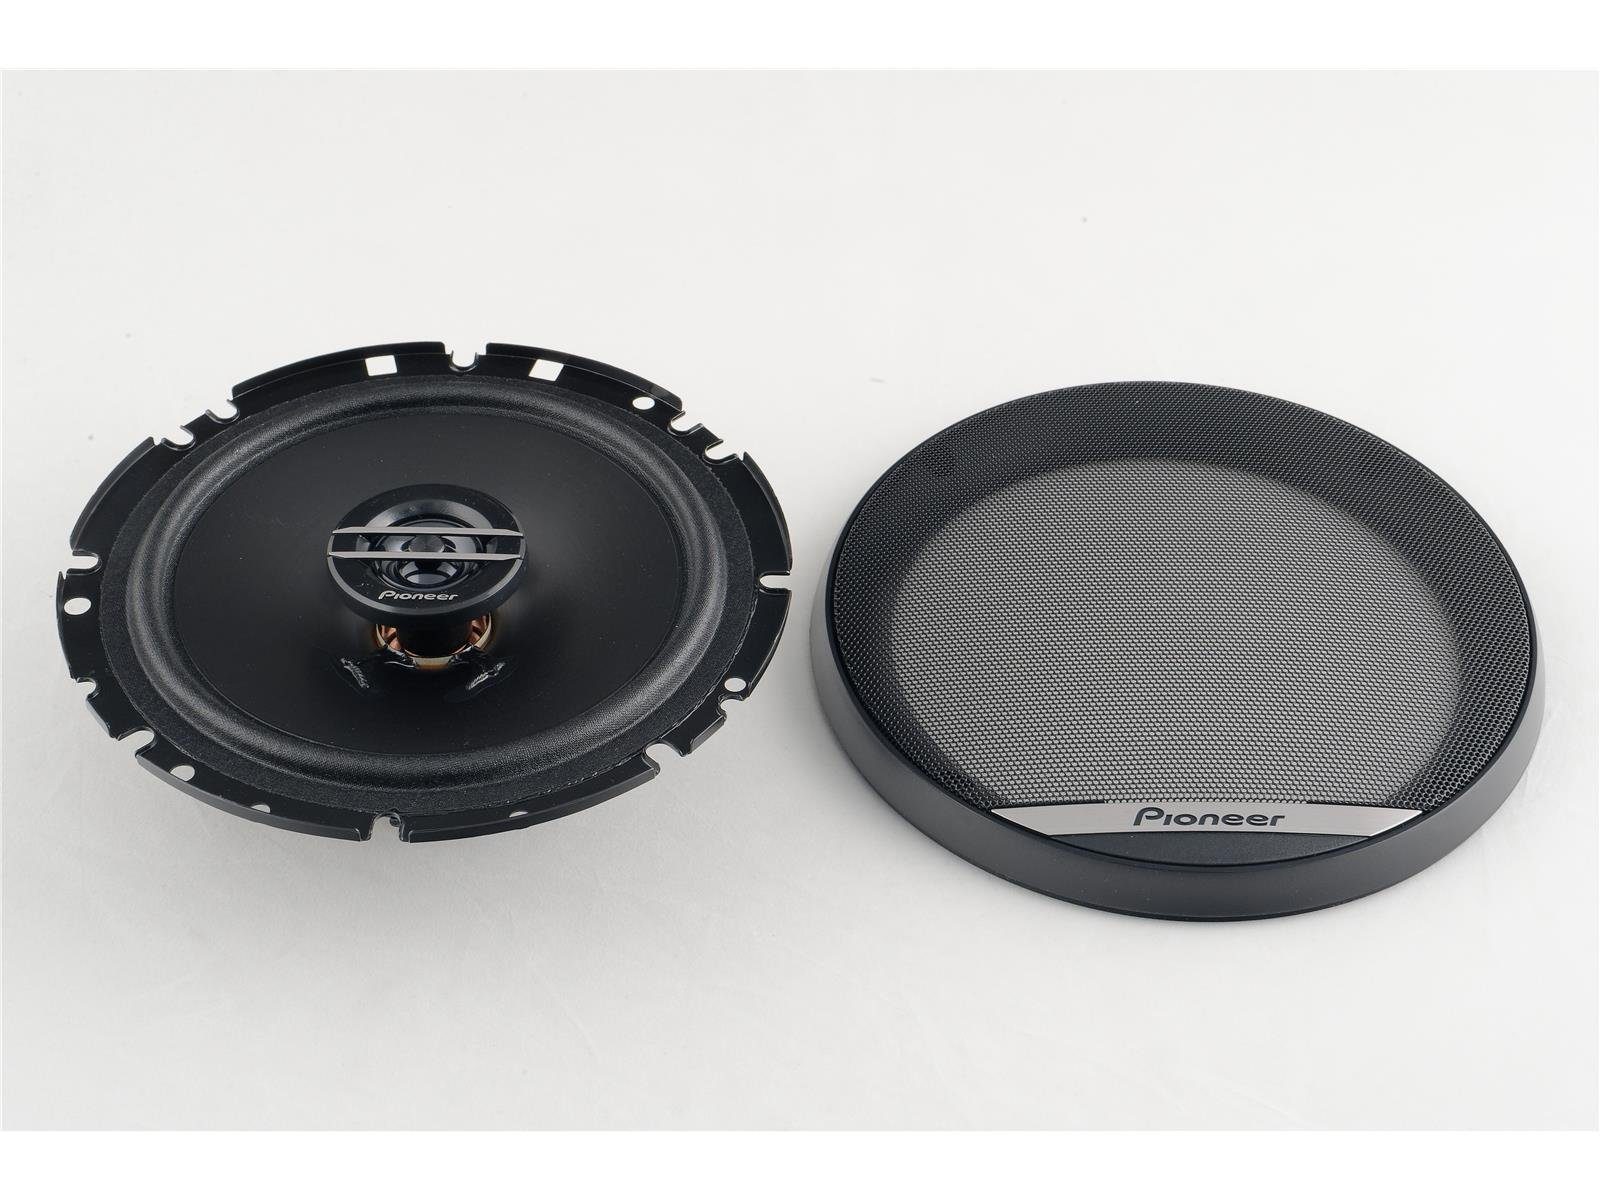 Audi passend Lautsprecher vorne C5 für Pioneer A6 Pioneer hinten oder Auto-Lautsprecher